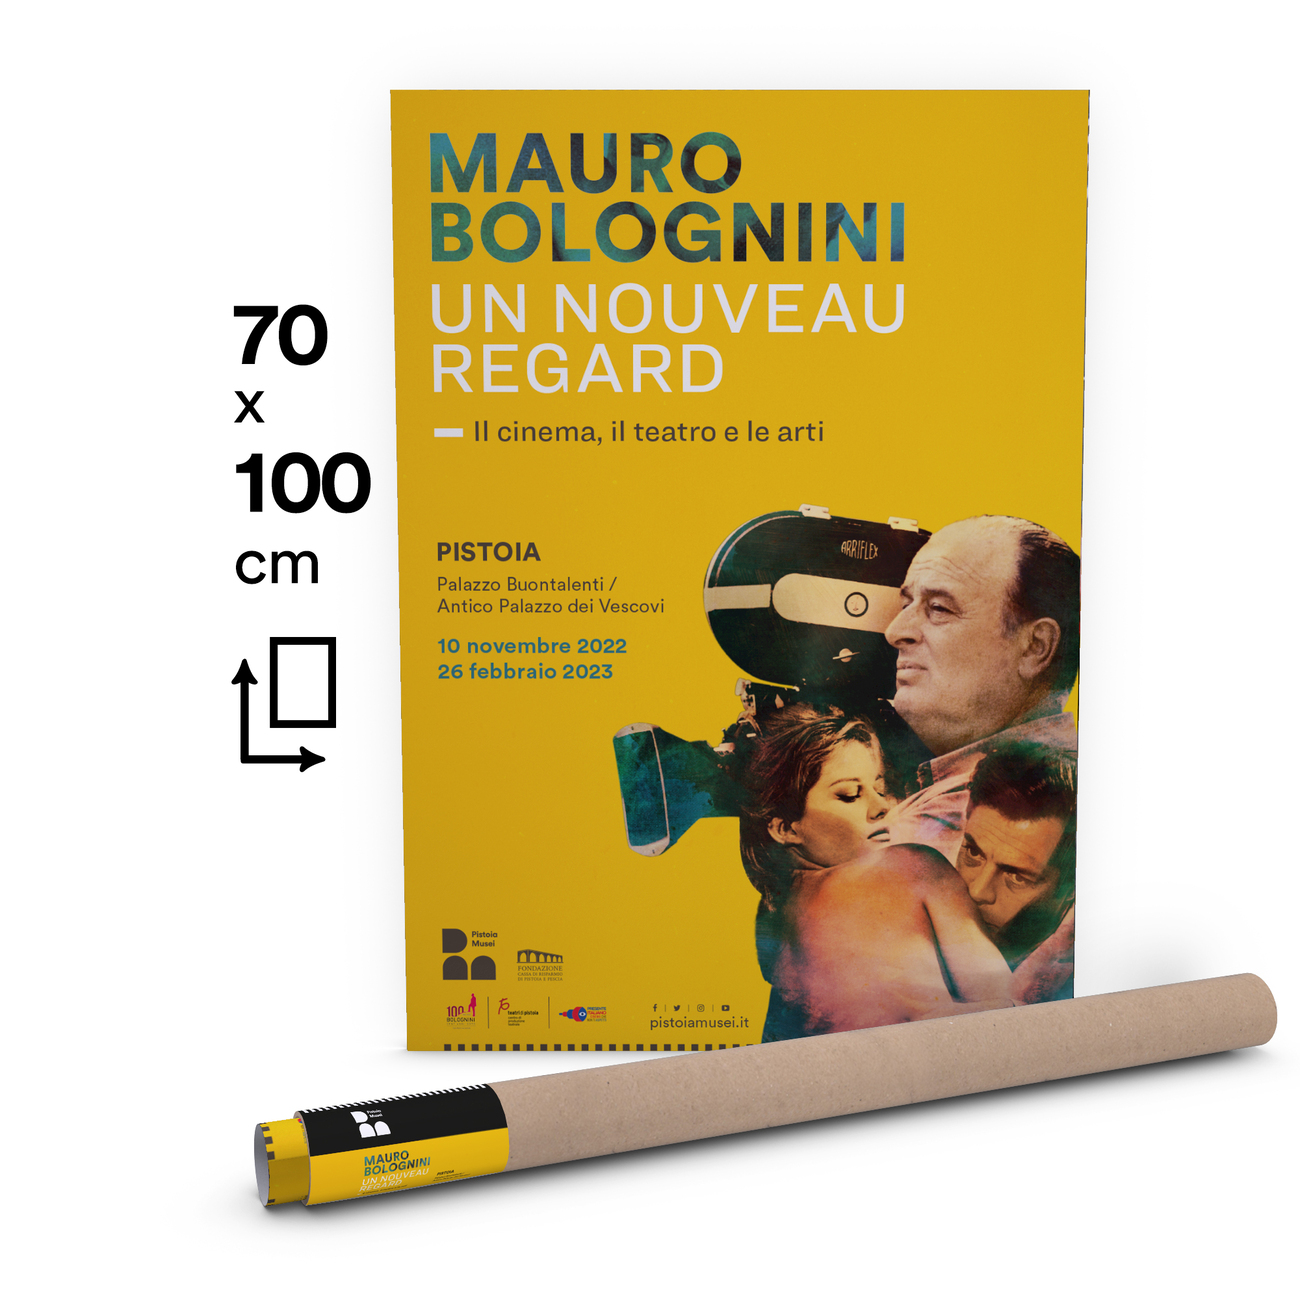 Mauro Bolognini. Un Nouveau Regard | Poster